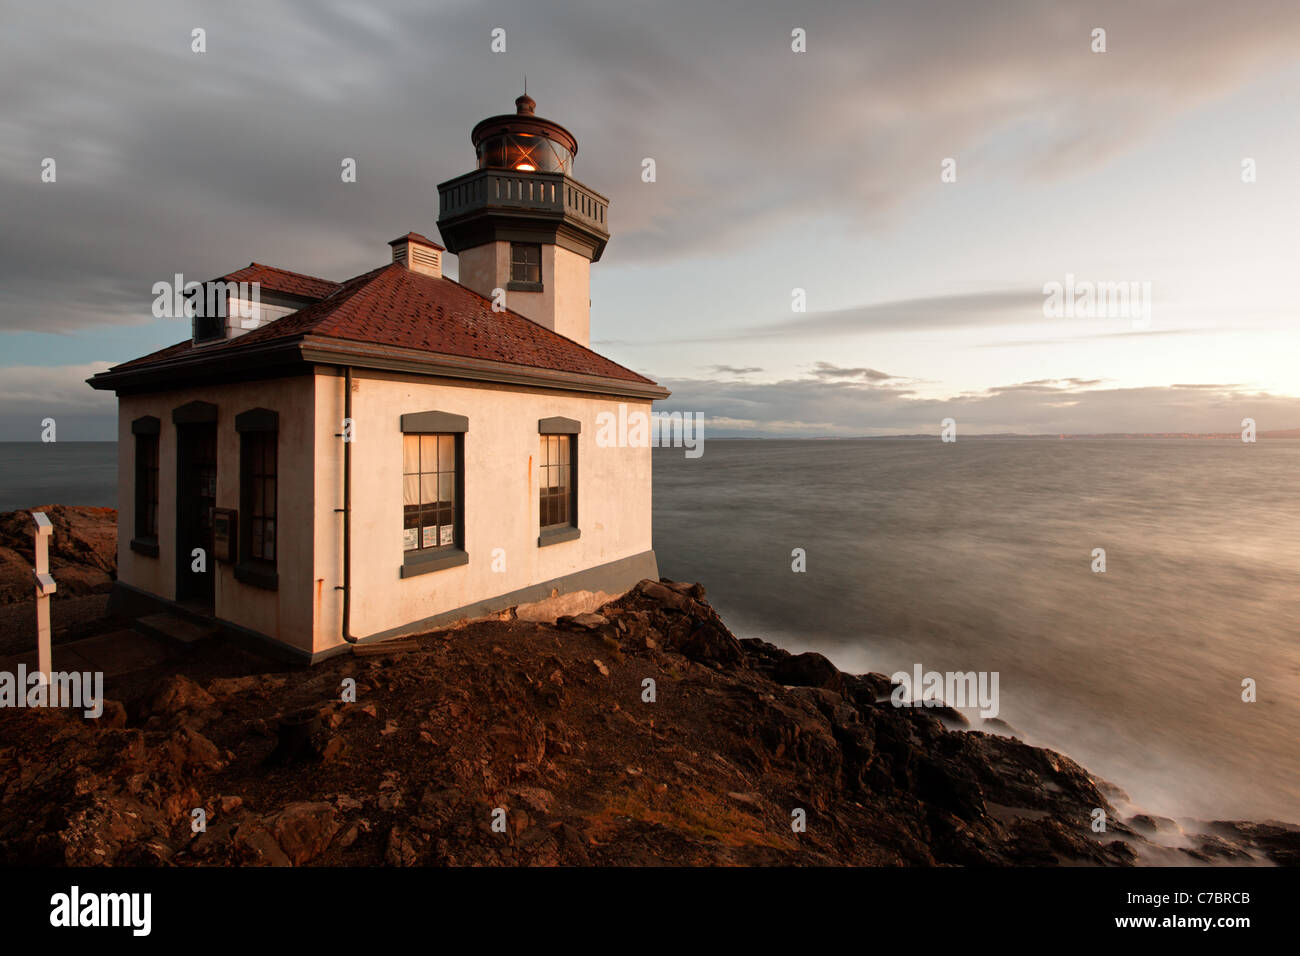 Four à Chaux Point Lighthouse, four à chaux Point State Park, San Juan Island, Washington, USA Banque D'Images